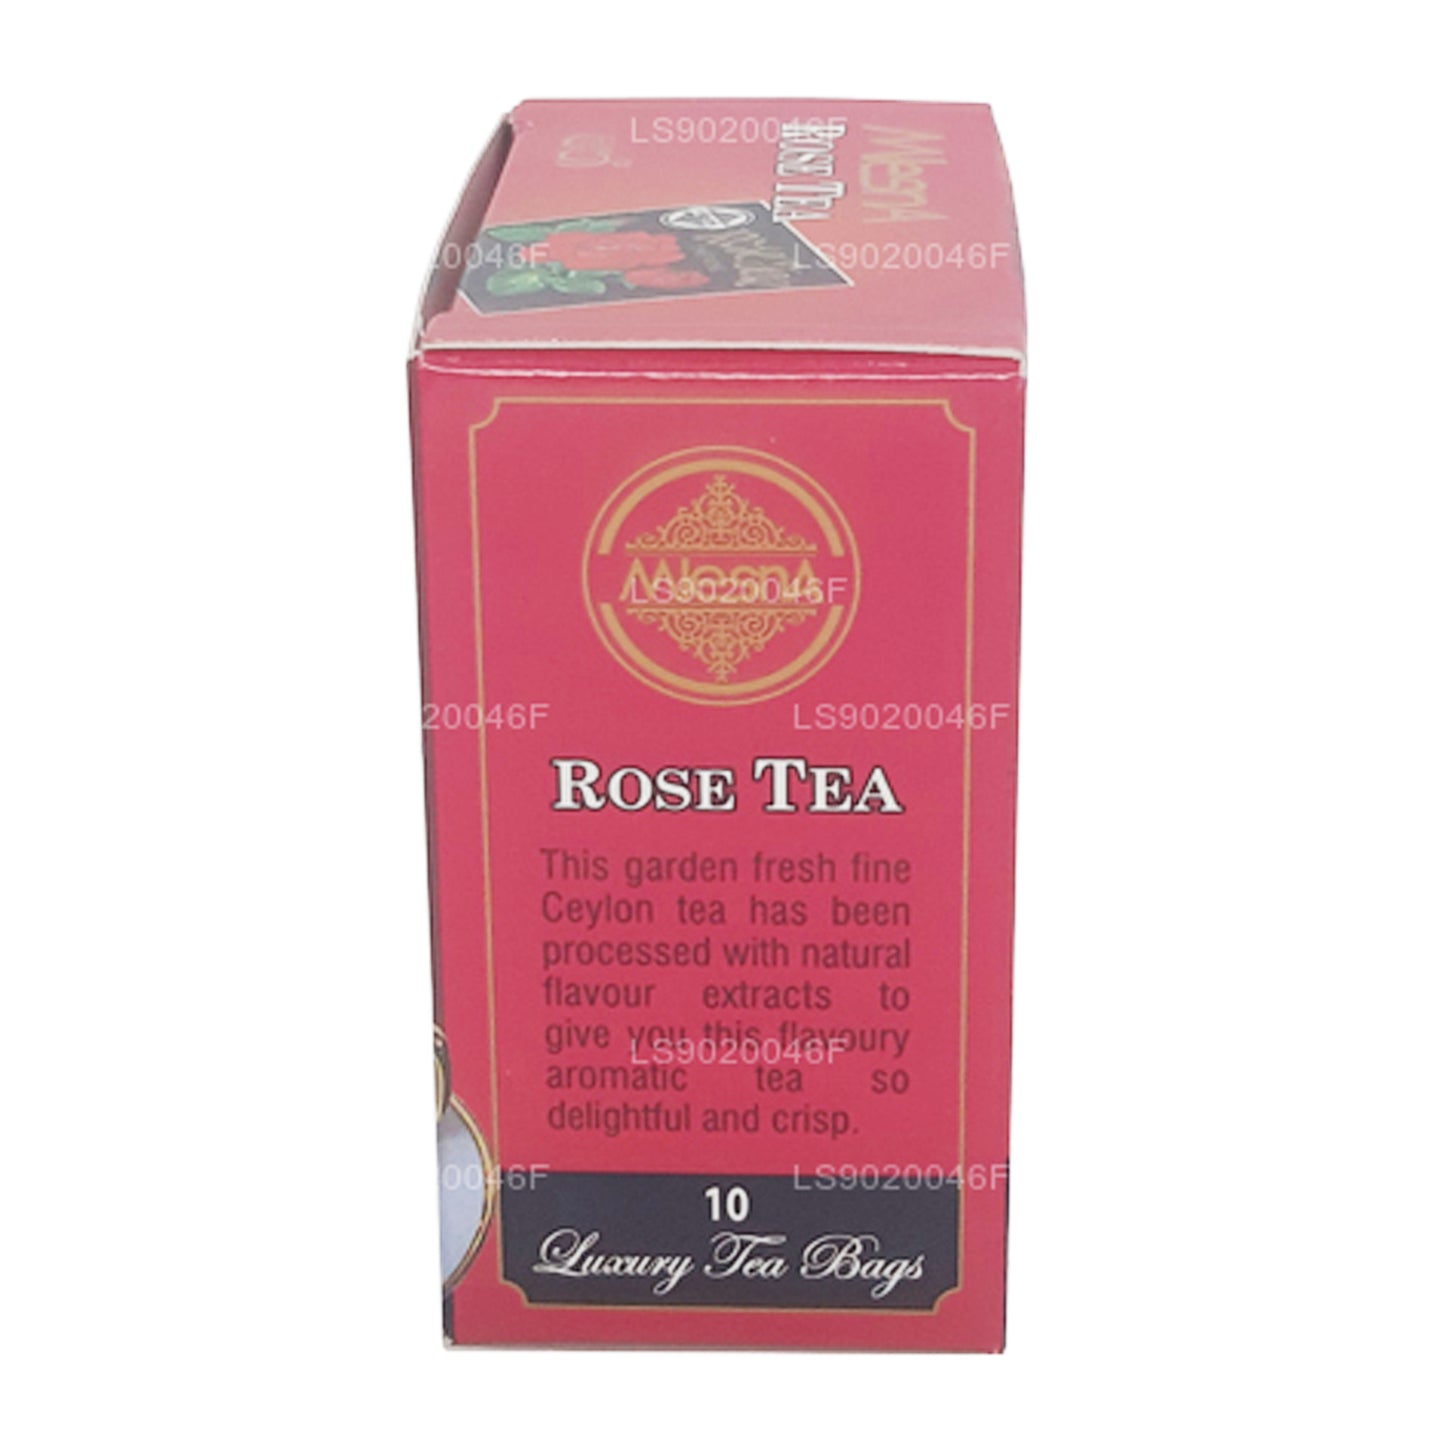 Mlesna Rose Tea (20g) 10 luxe theezakjes